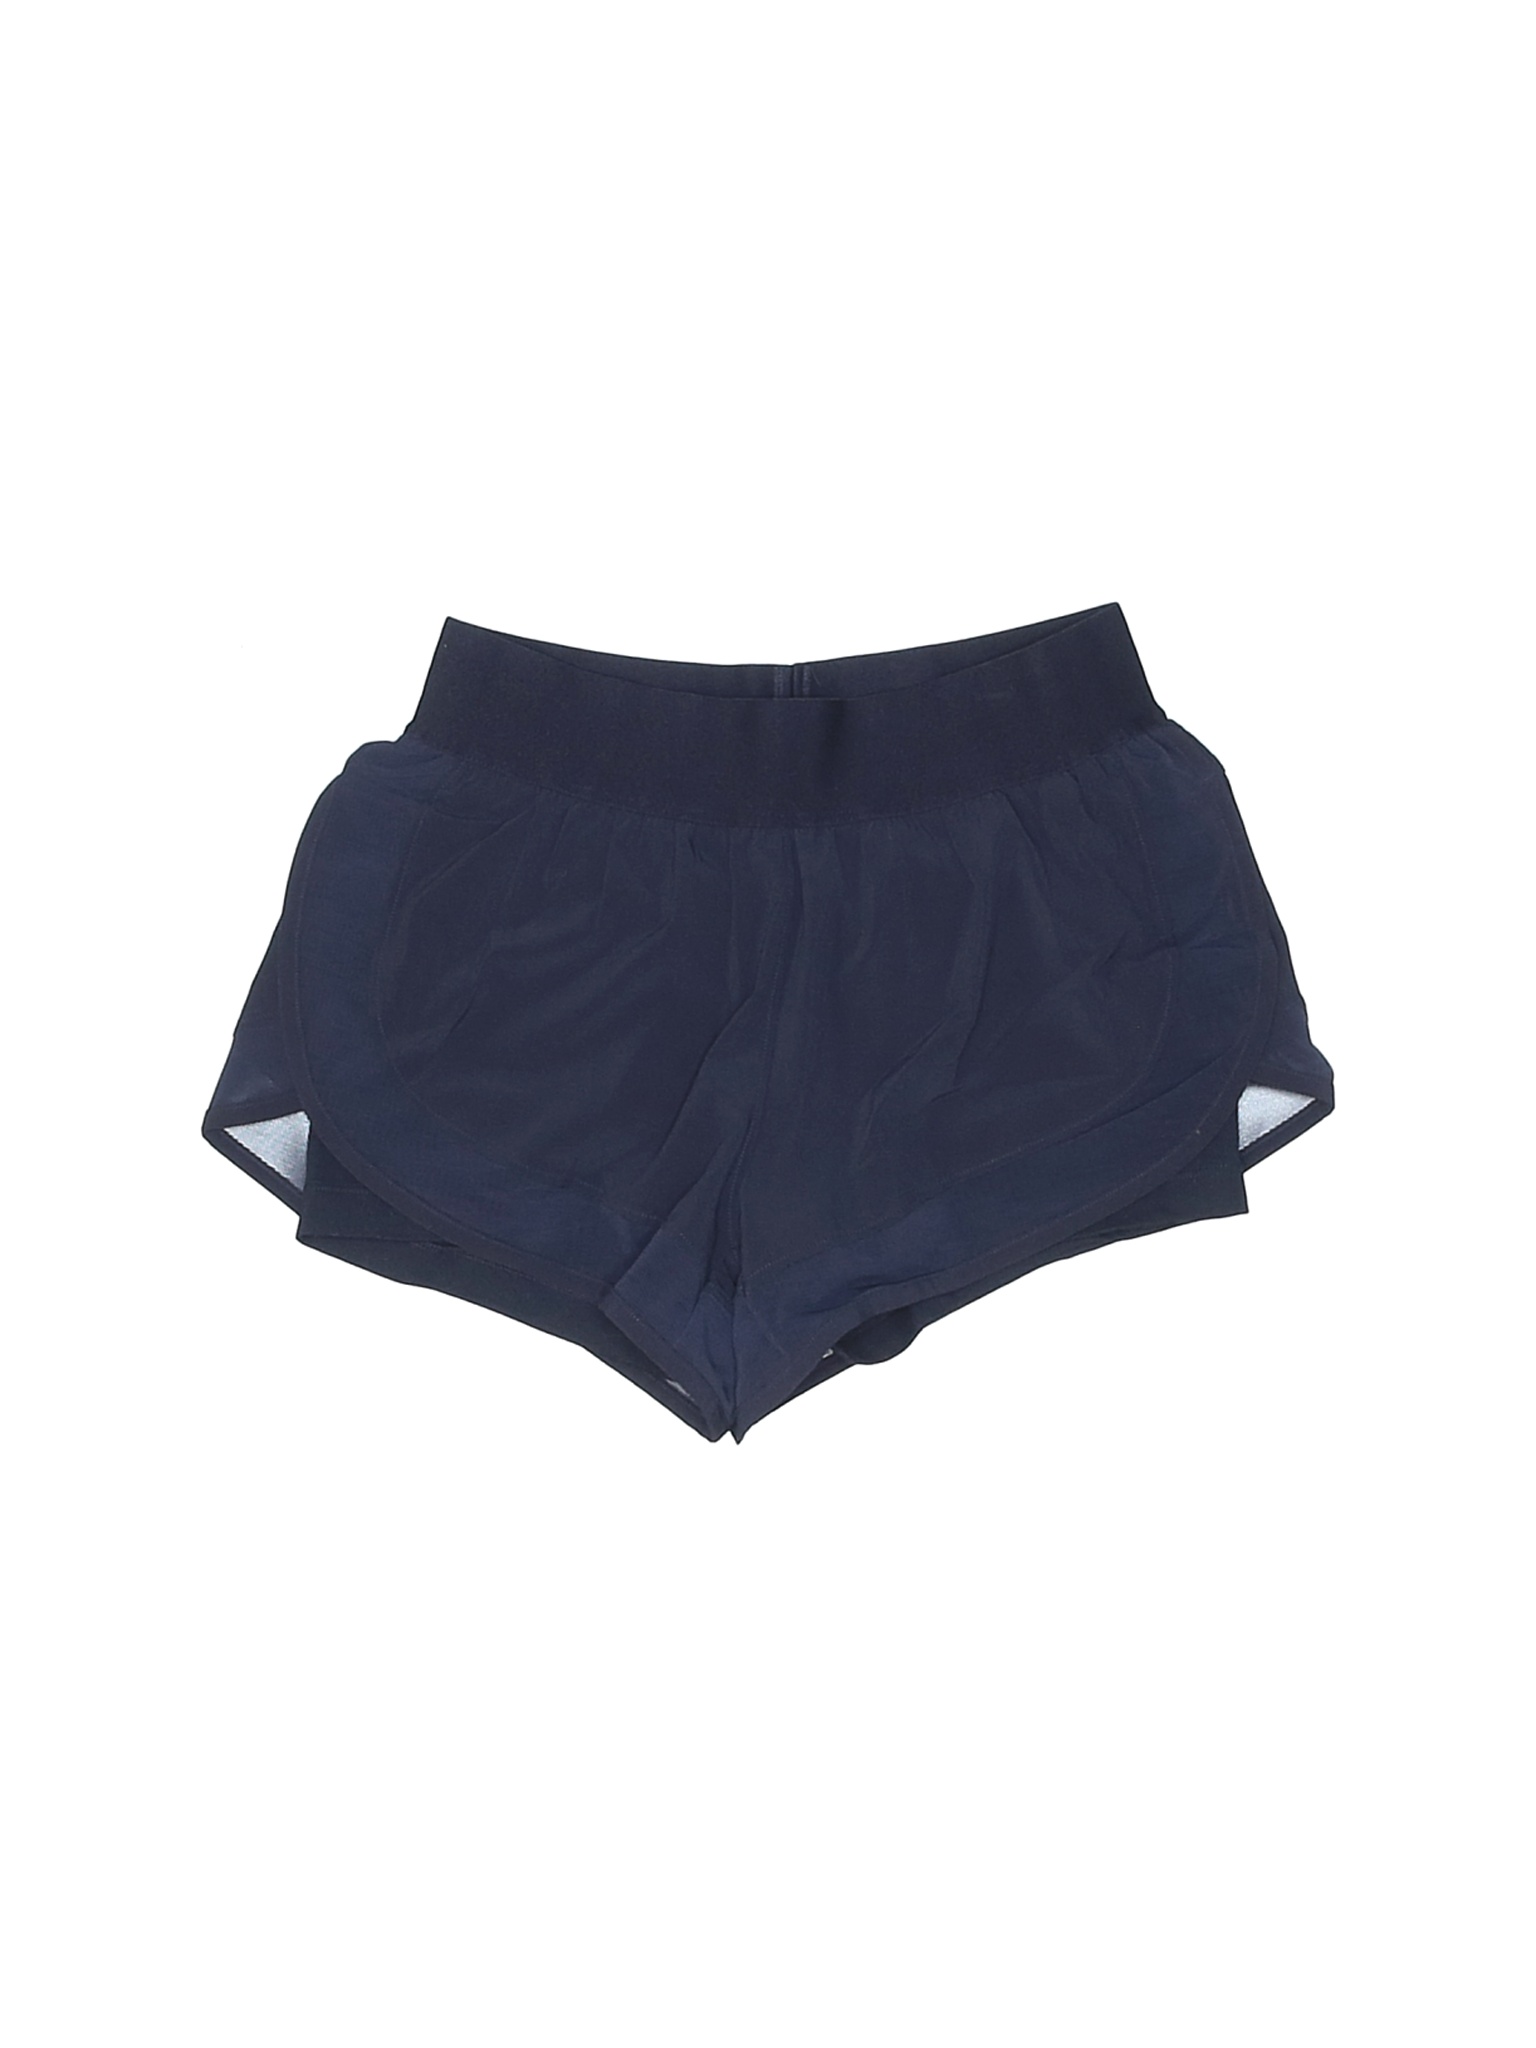 New Balance Women Blue Athletic Shorts XS | eBay